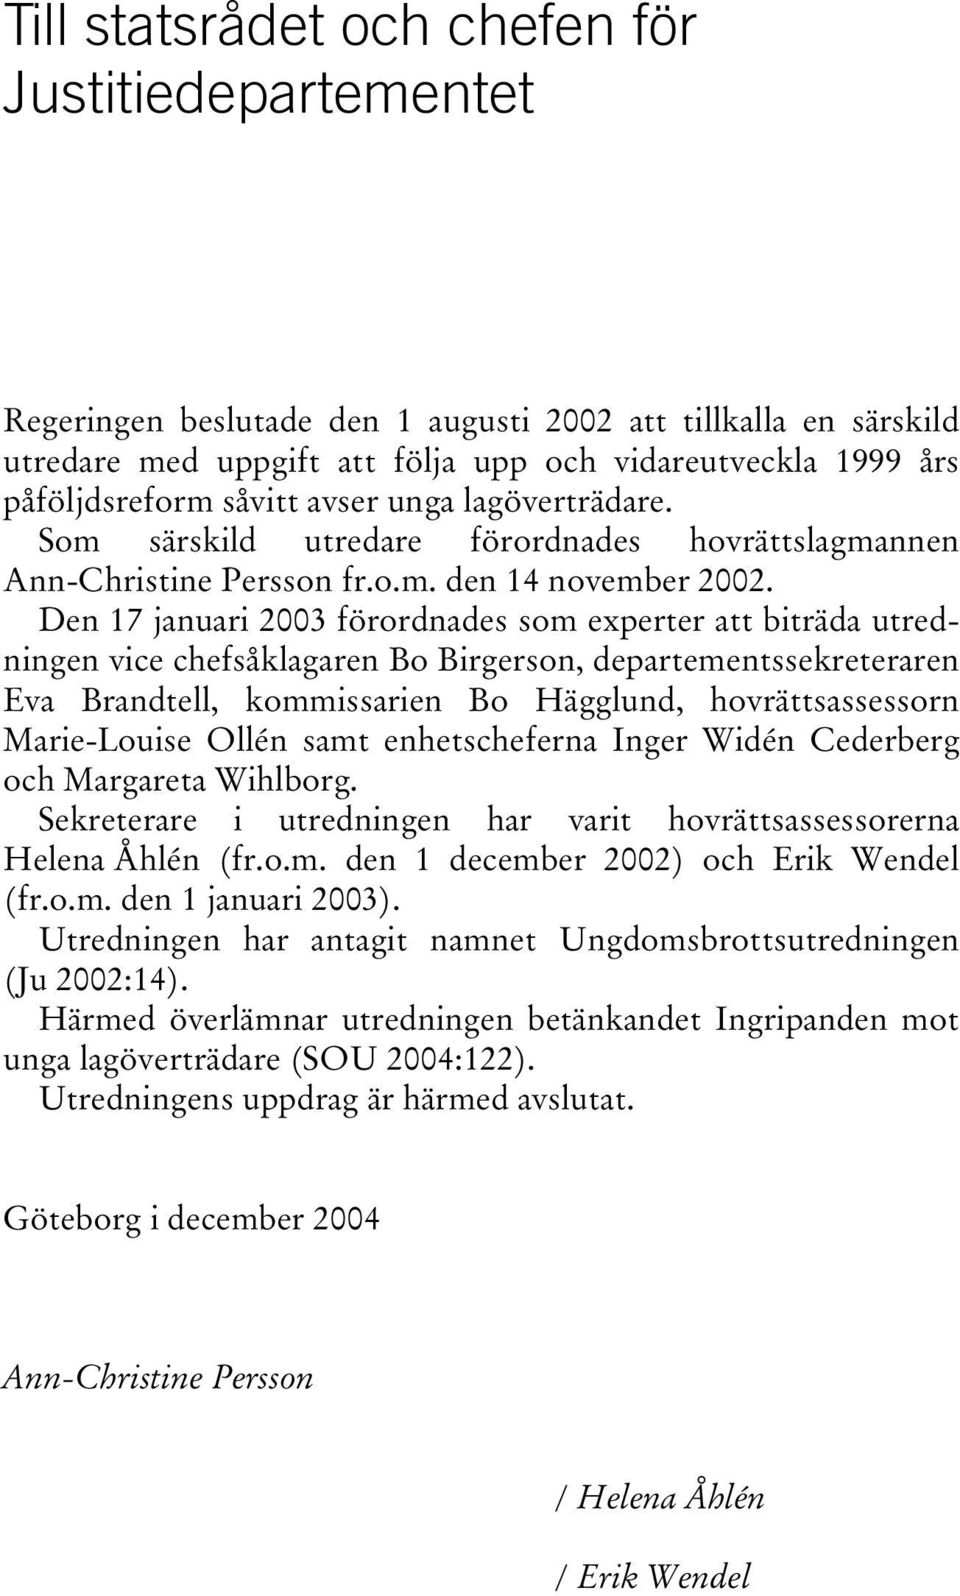 Den 17 januari 2003 förordnades som experter att biträda utredningen vice chefsåklagaren Bo Birgerson, departementssekreteraren Eva Brandtell, kommissarien Bo Hägglund, hovrättsassessorn Marie-Louise